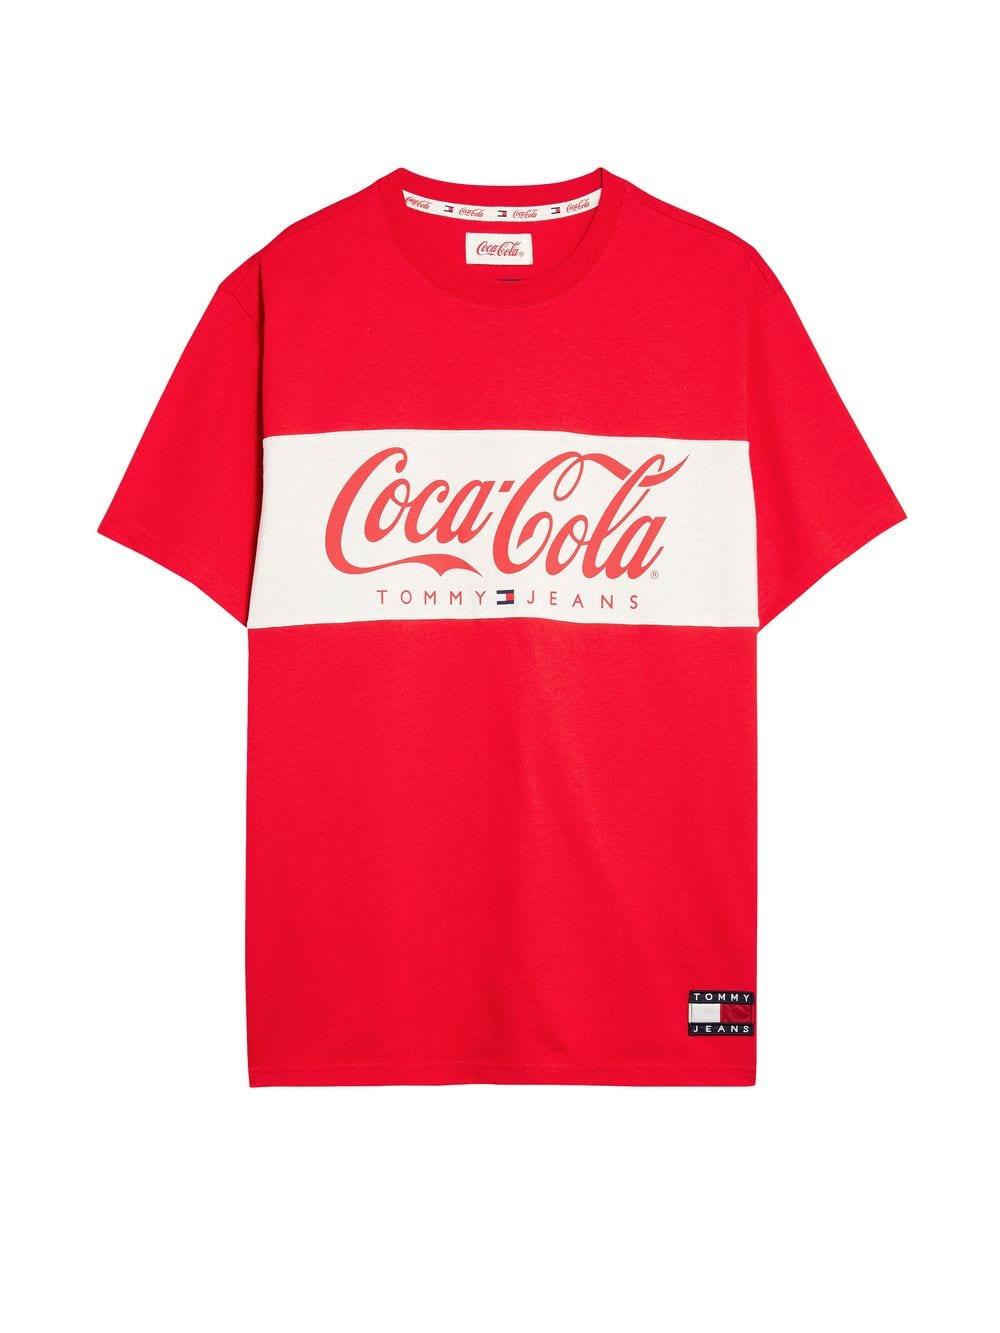 coca cola tommy hilfiger t shirt